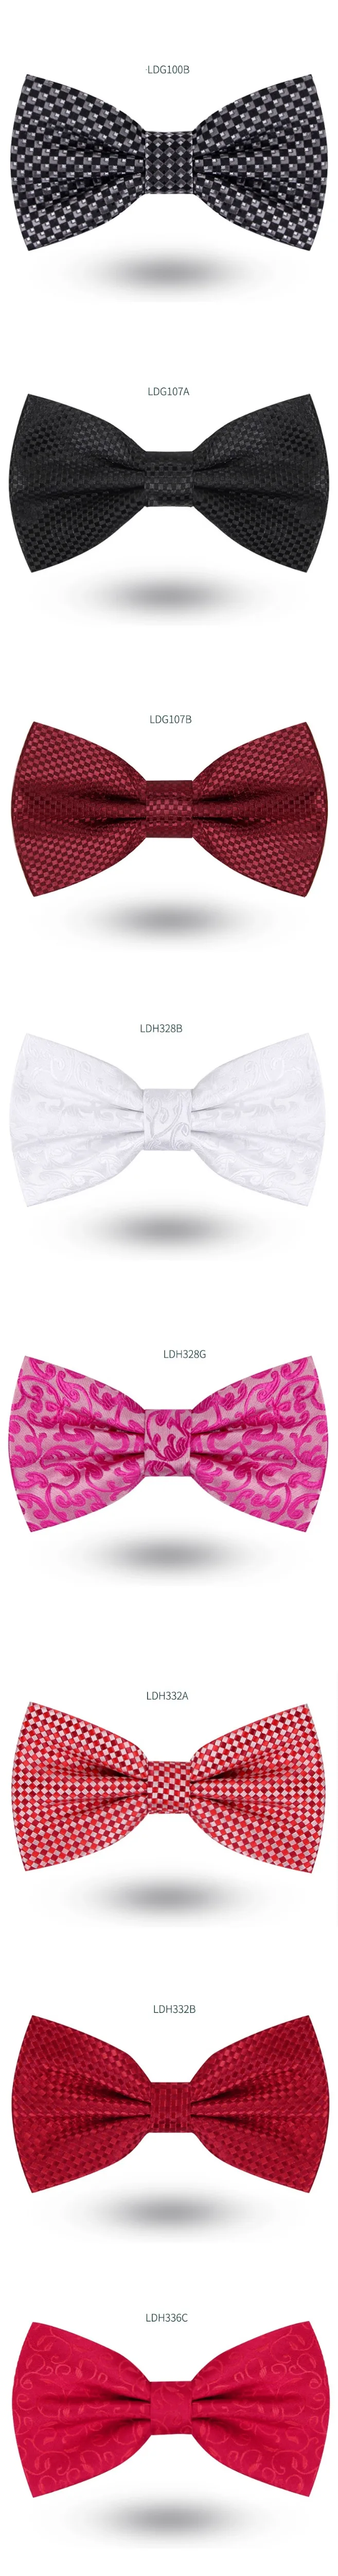 2019 Новая мода мужские галстуки-бабочки Свадебная вечеринка двойная ткань клетчатая галстук-бабочка клуб банкет годовщина бабочка галстук